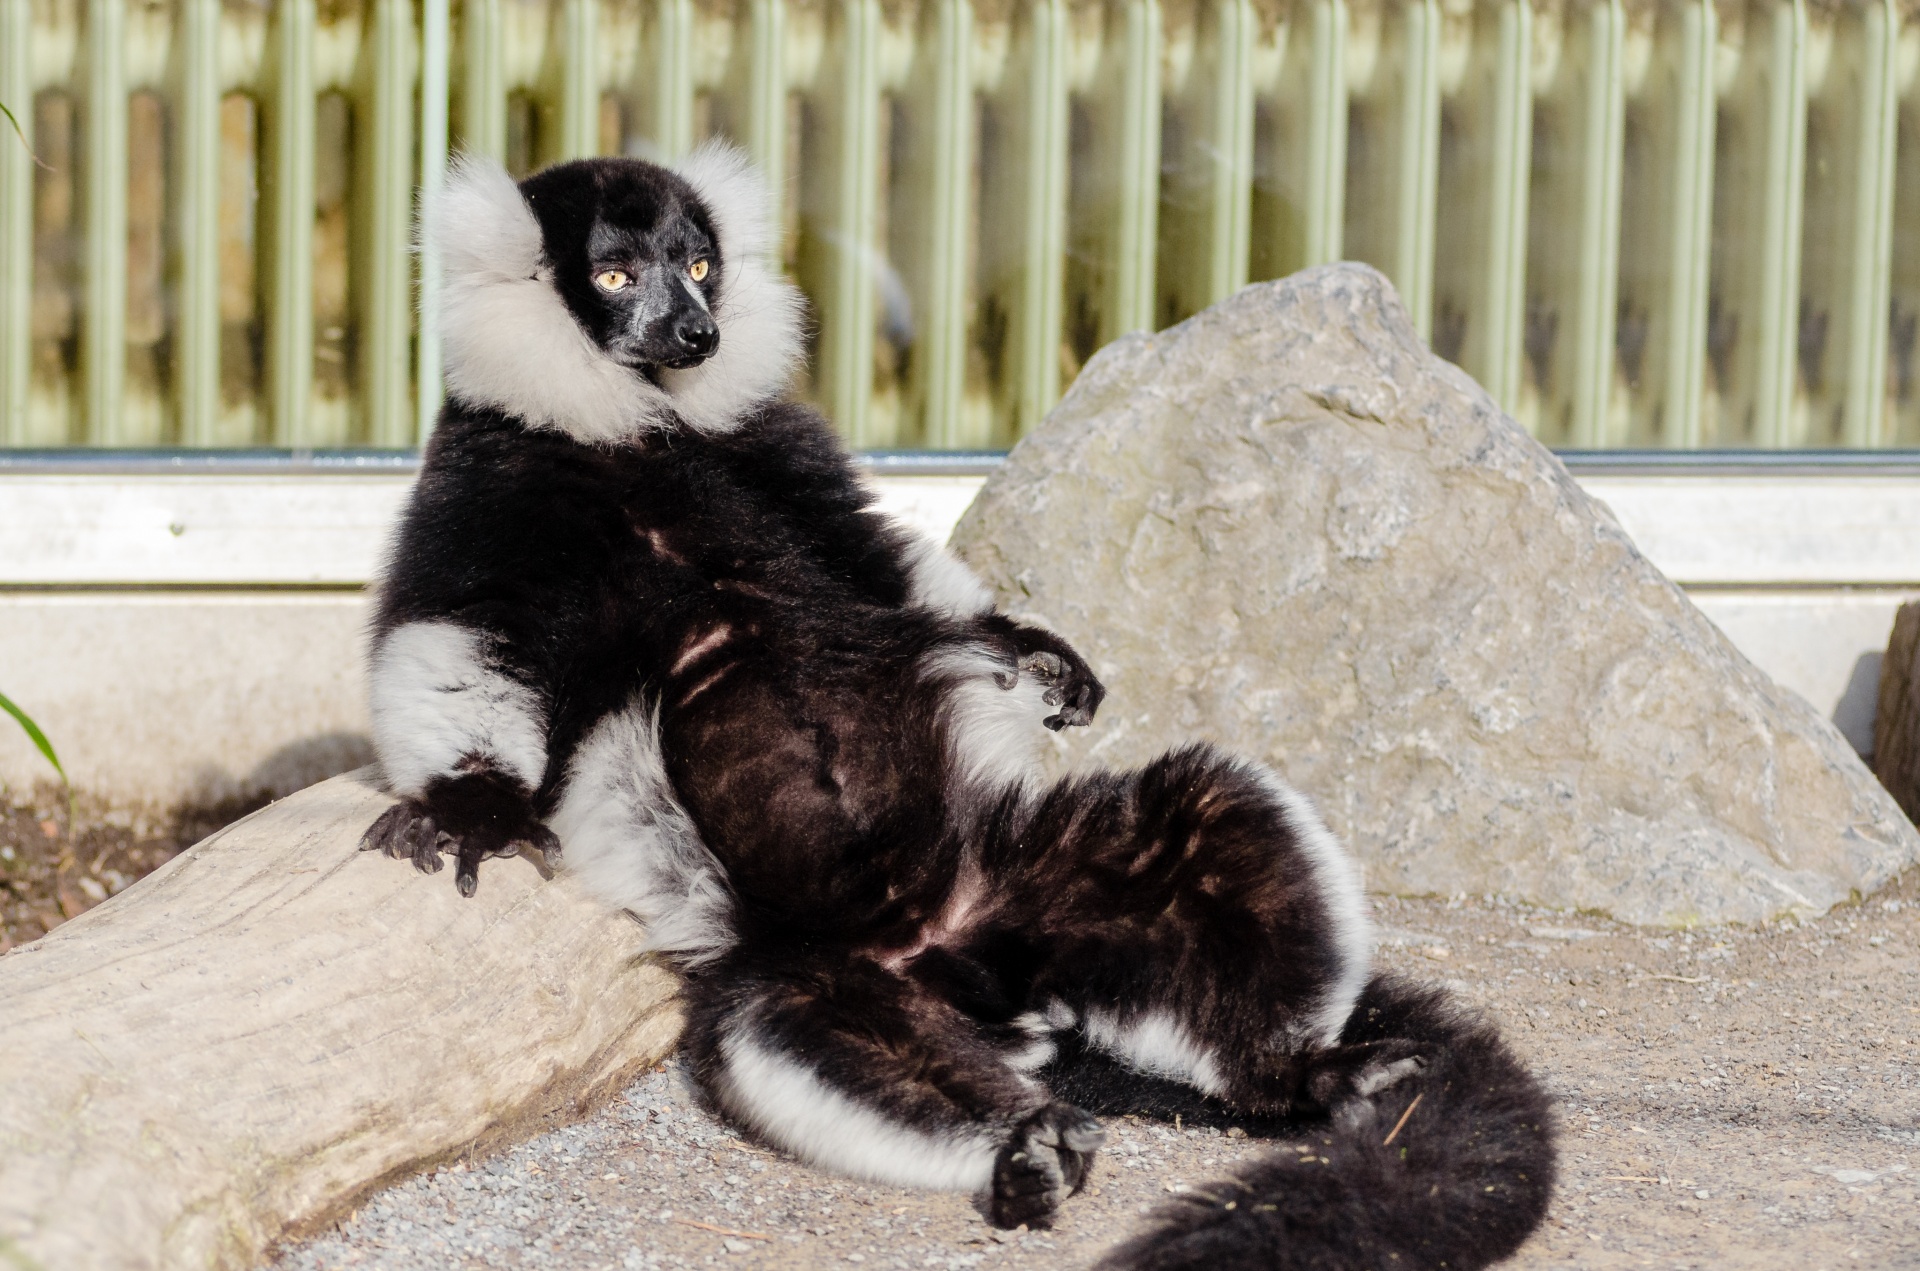 Lemur banhos de sol